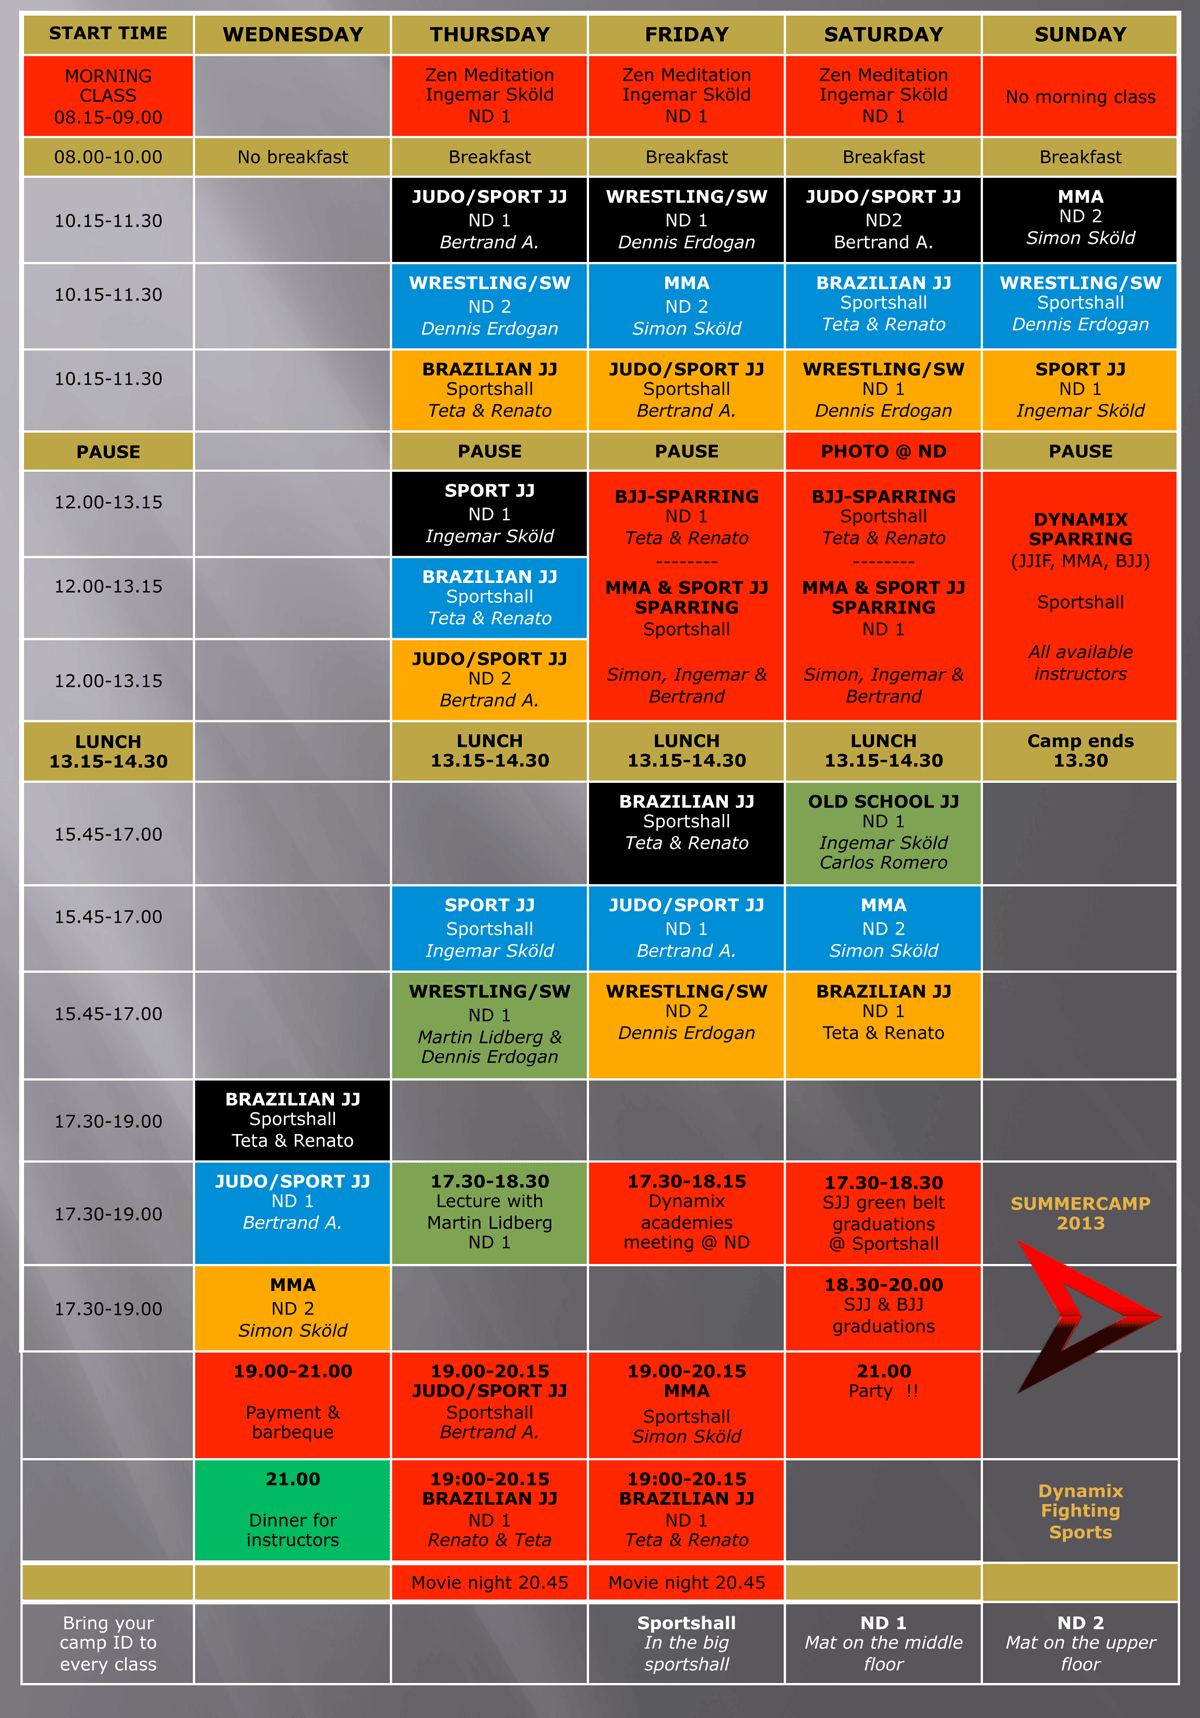 Summercamp schedule!